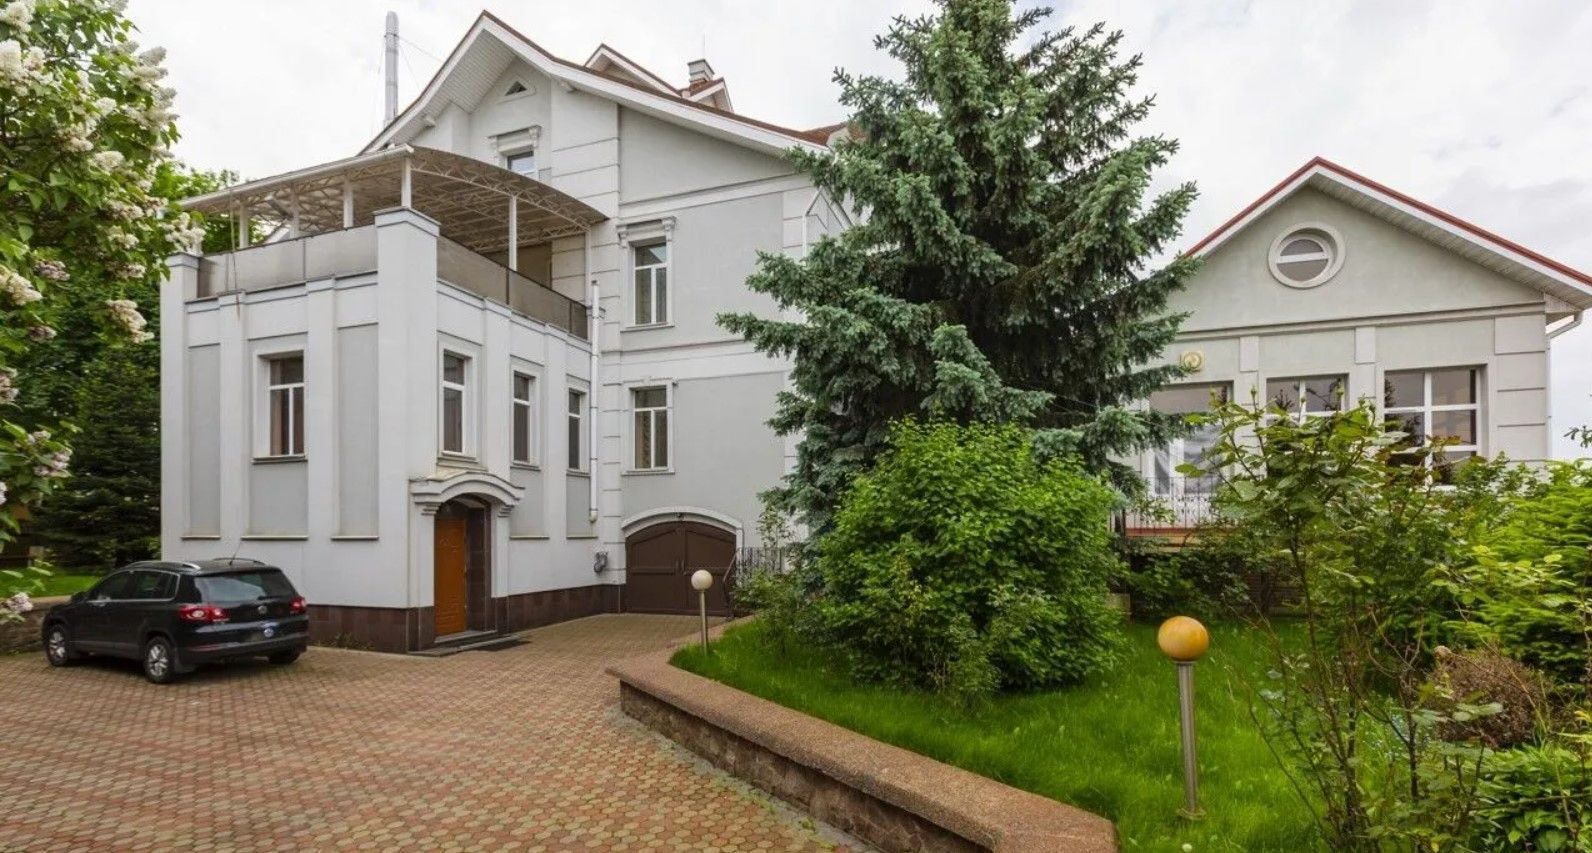 Розкіш по-київськи: на продаж виставили приватний будинок за 30 мільйонів гривень - Нерухомість